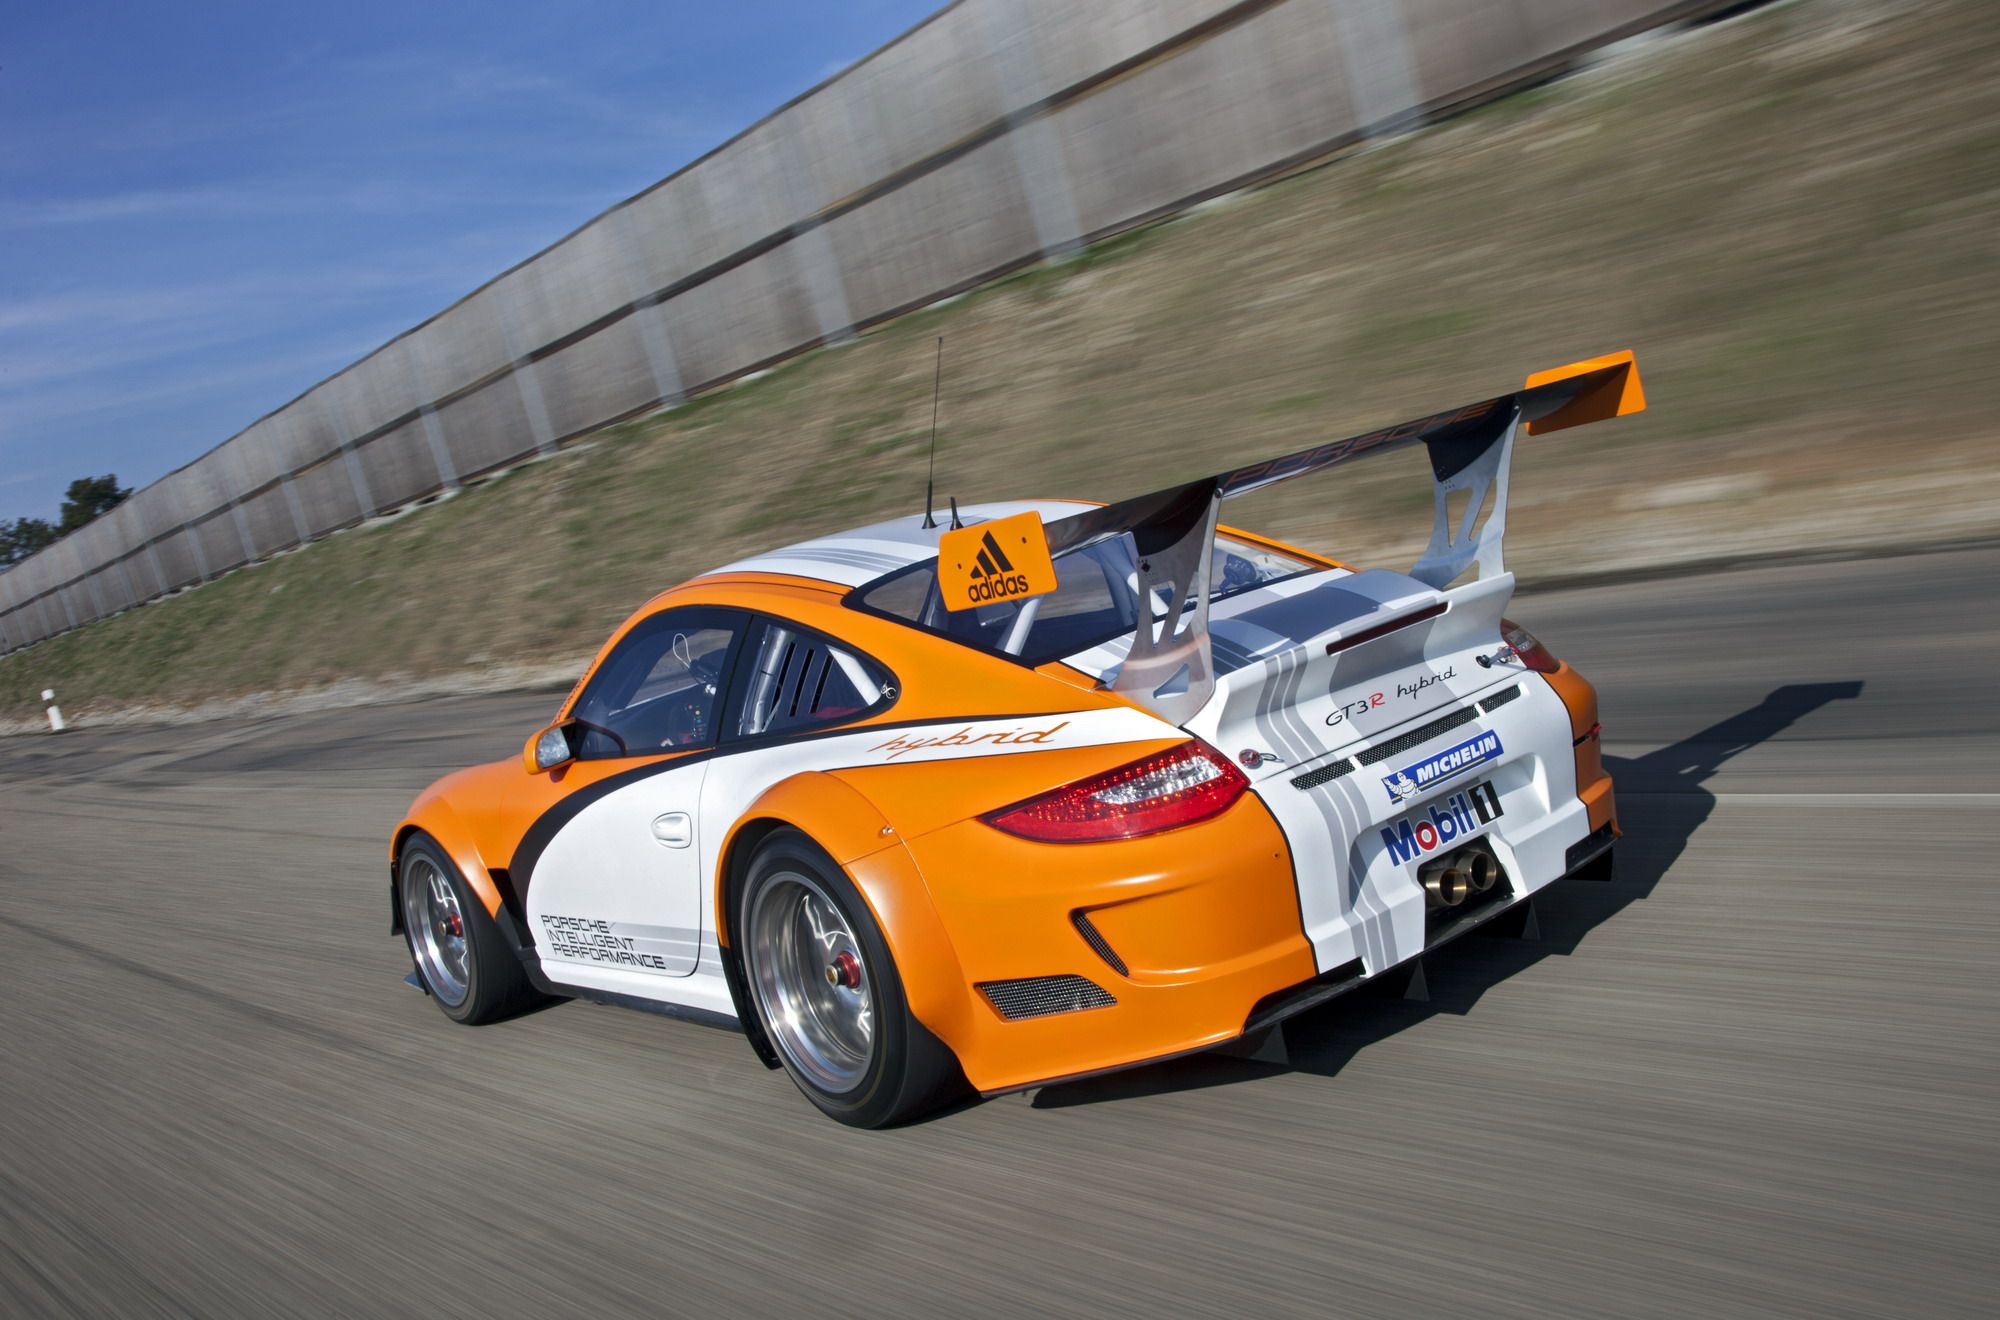 2011 Porsche 911 GT3 R Hybrid Version 2.0